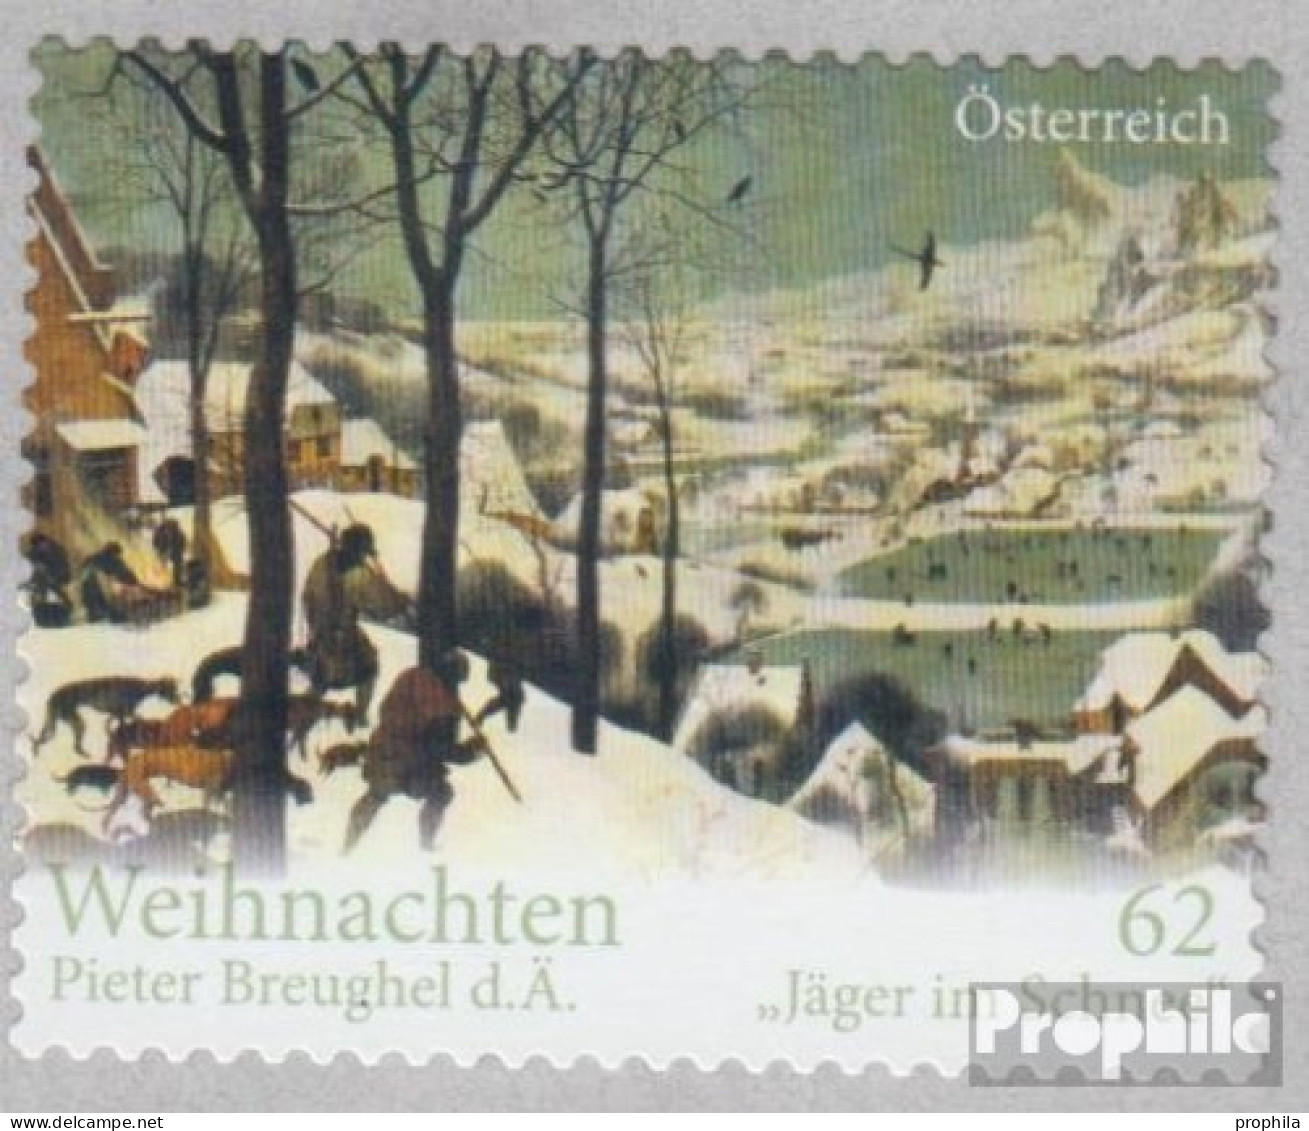 Österreich 3042 (kompl.Ausg.) Postfrisch 2012 Weihnachten - Unused Stamps